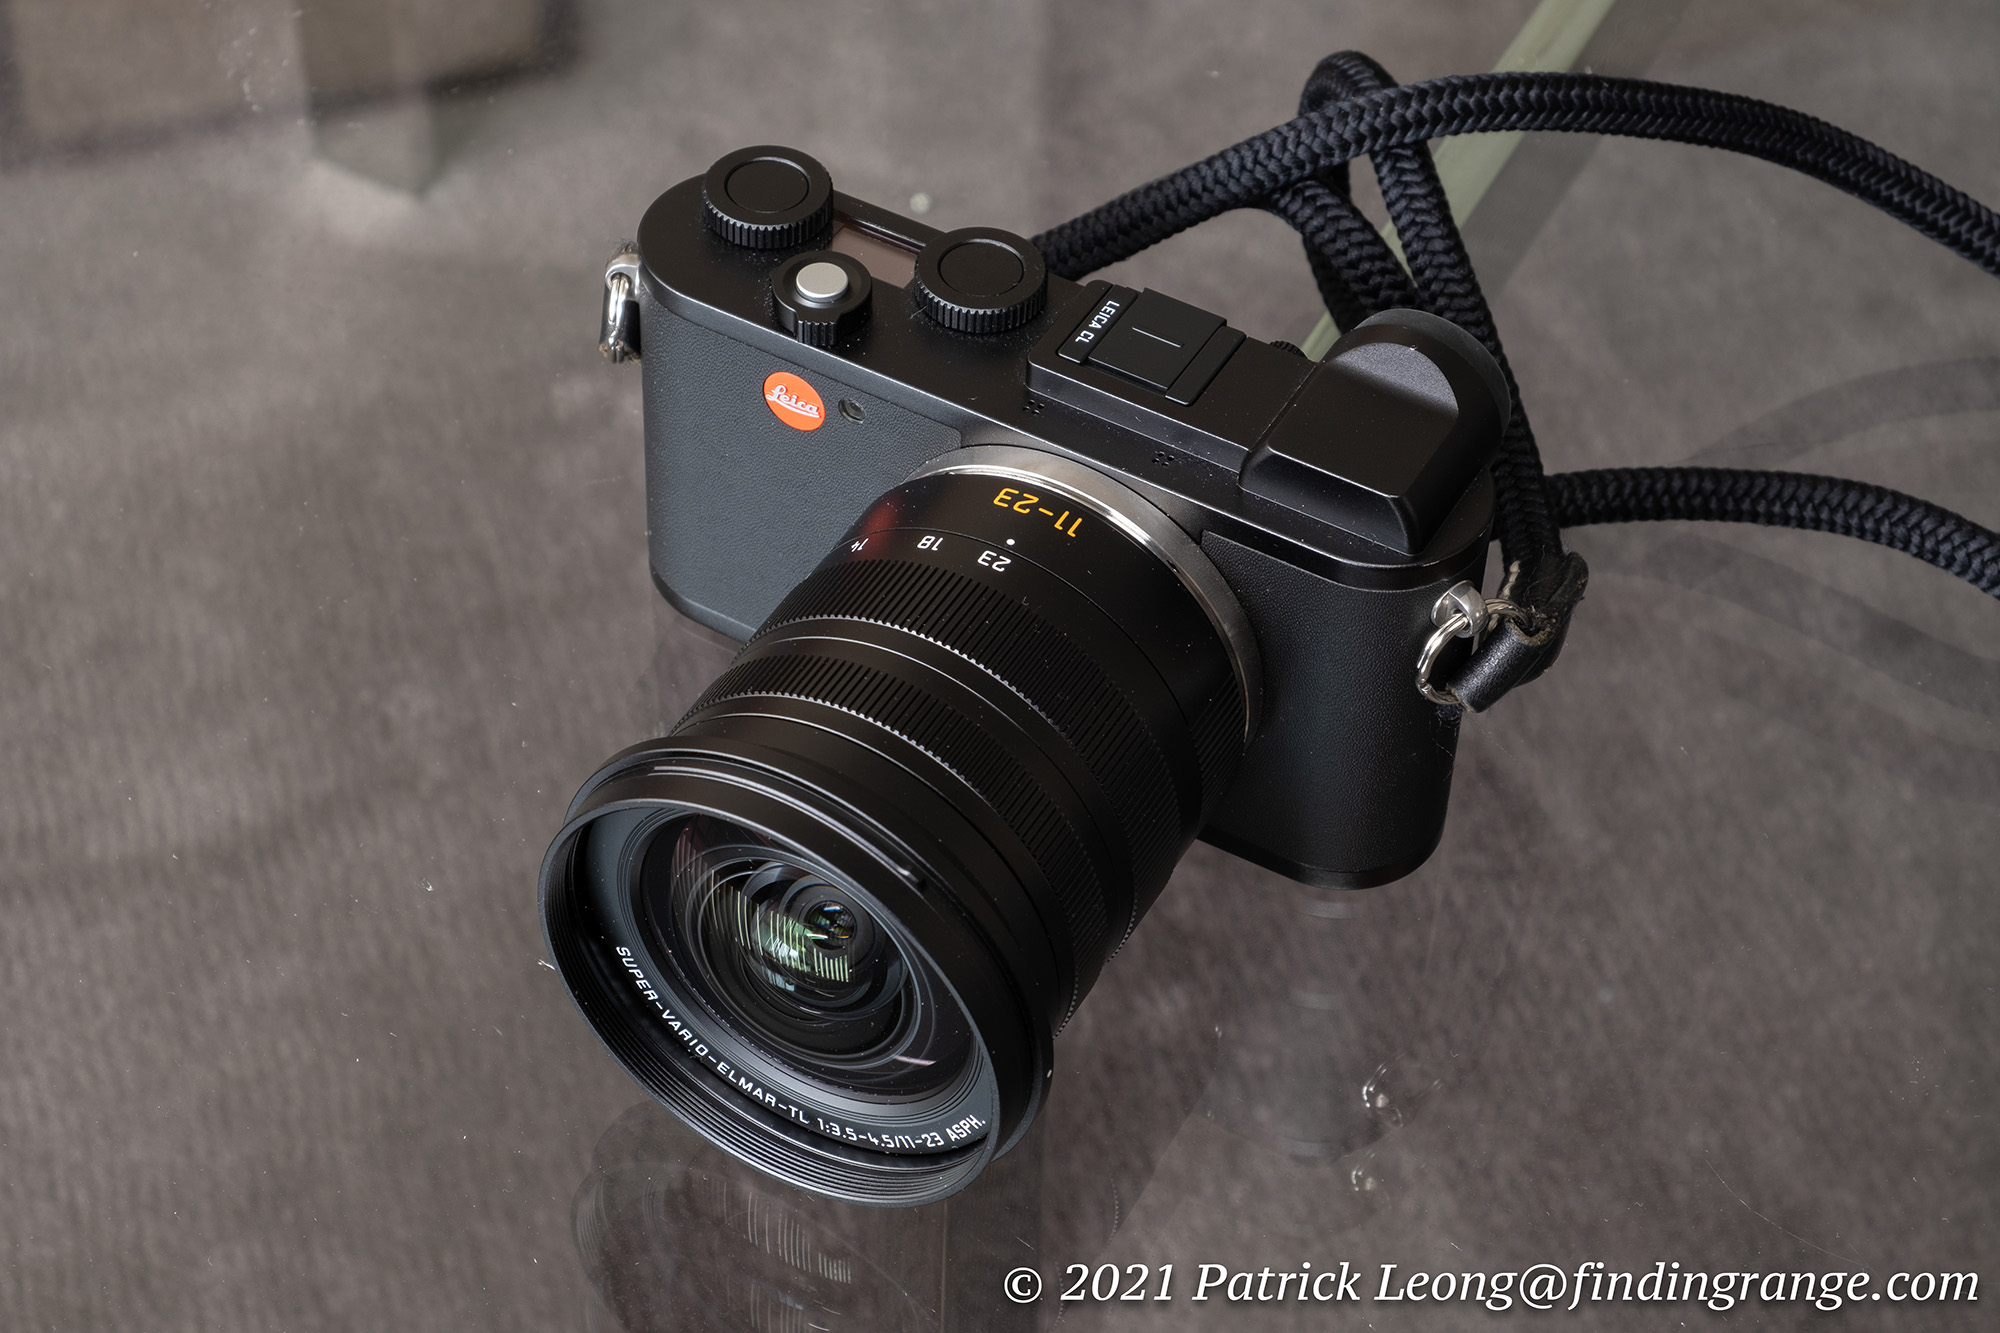 Consumeren taart moederlijk Leica Super-Vario-Elmar-T 11-23mm ASPH Review - Finding Range